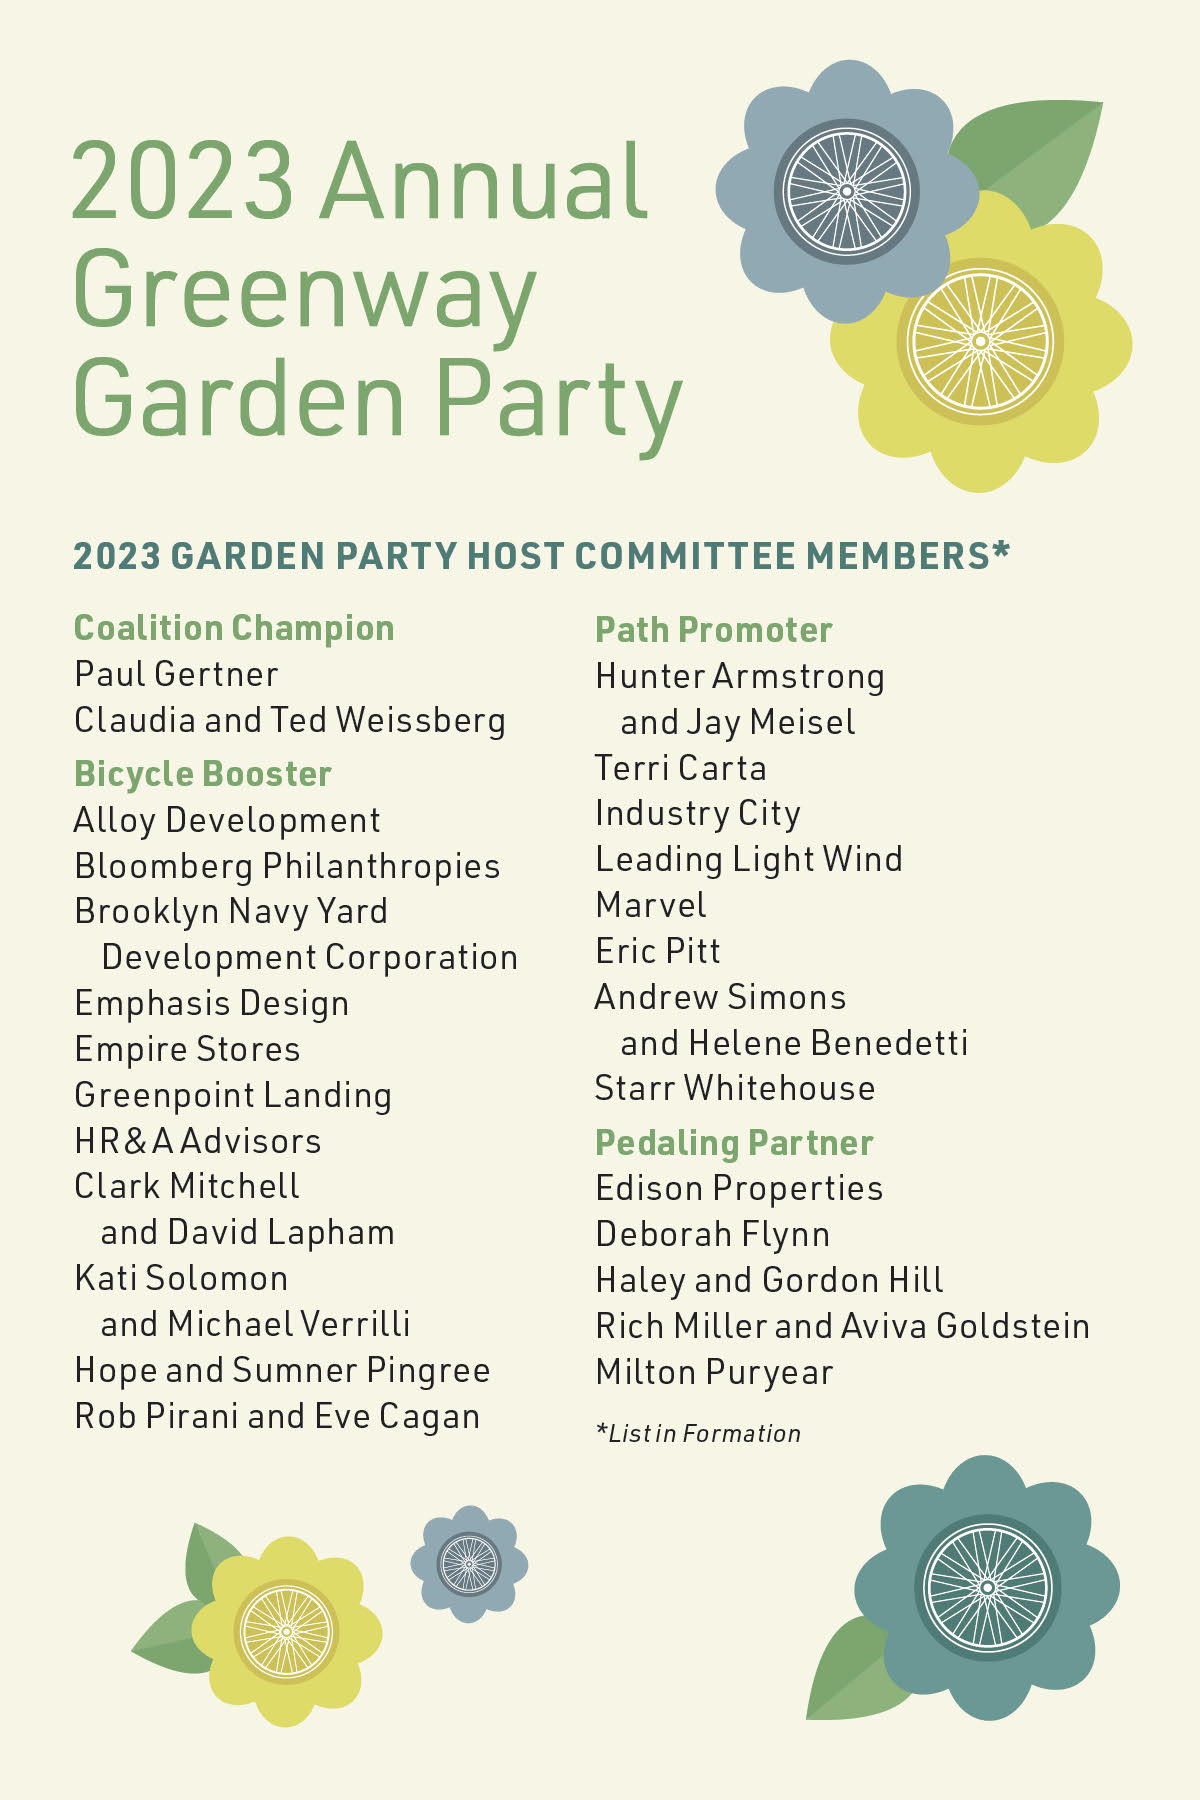 Host Committee members